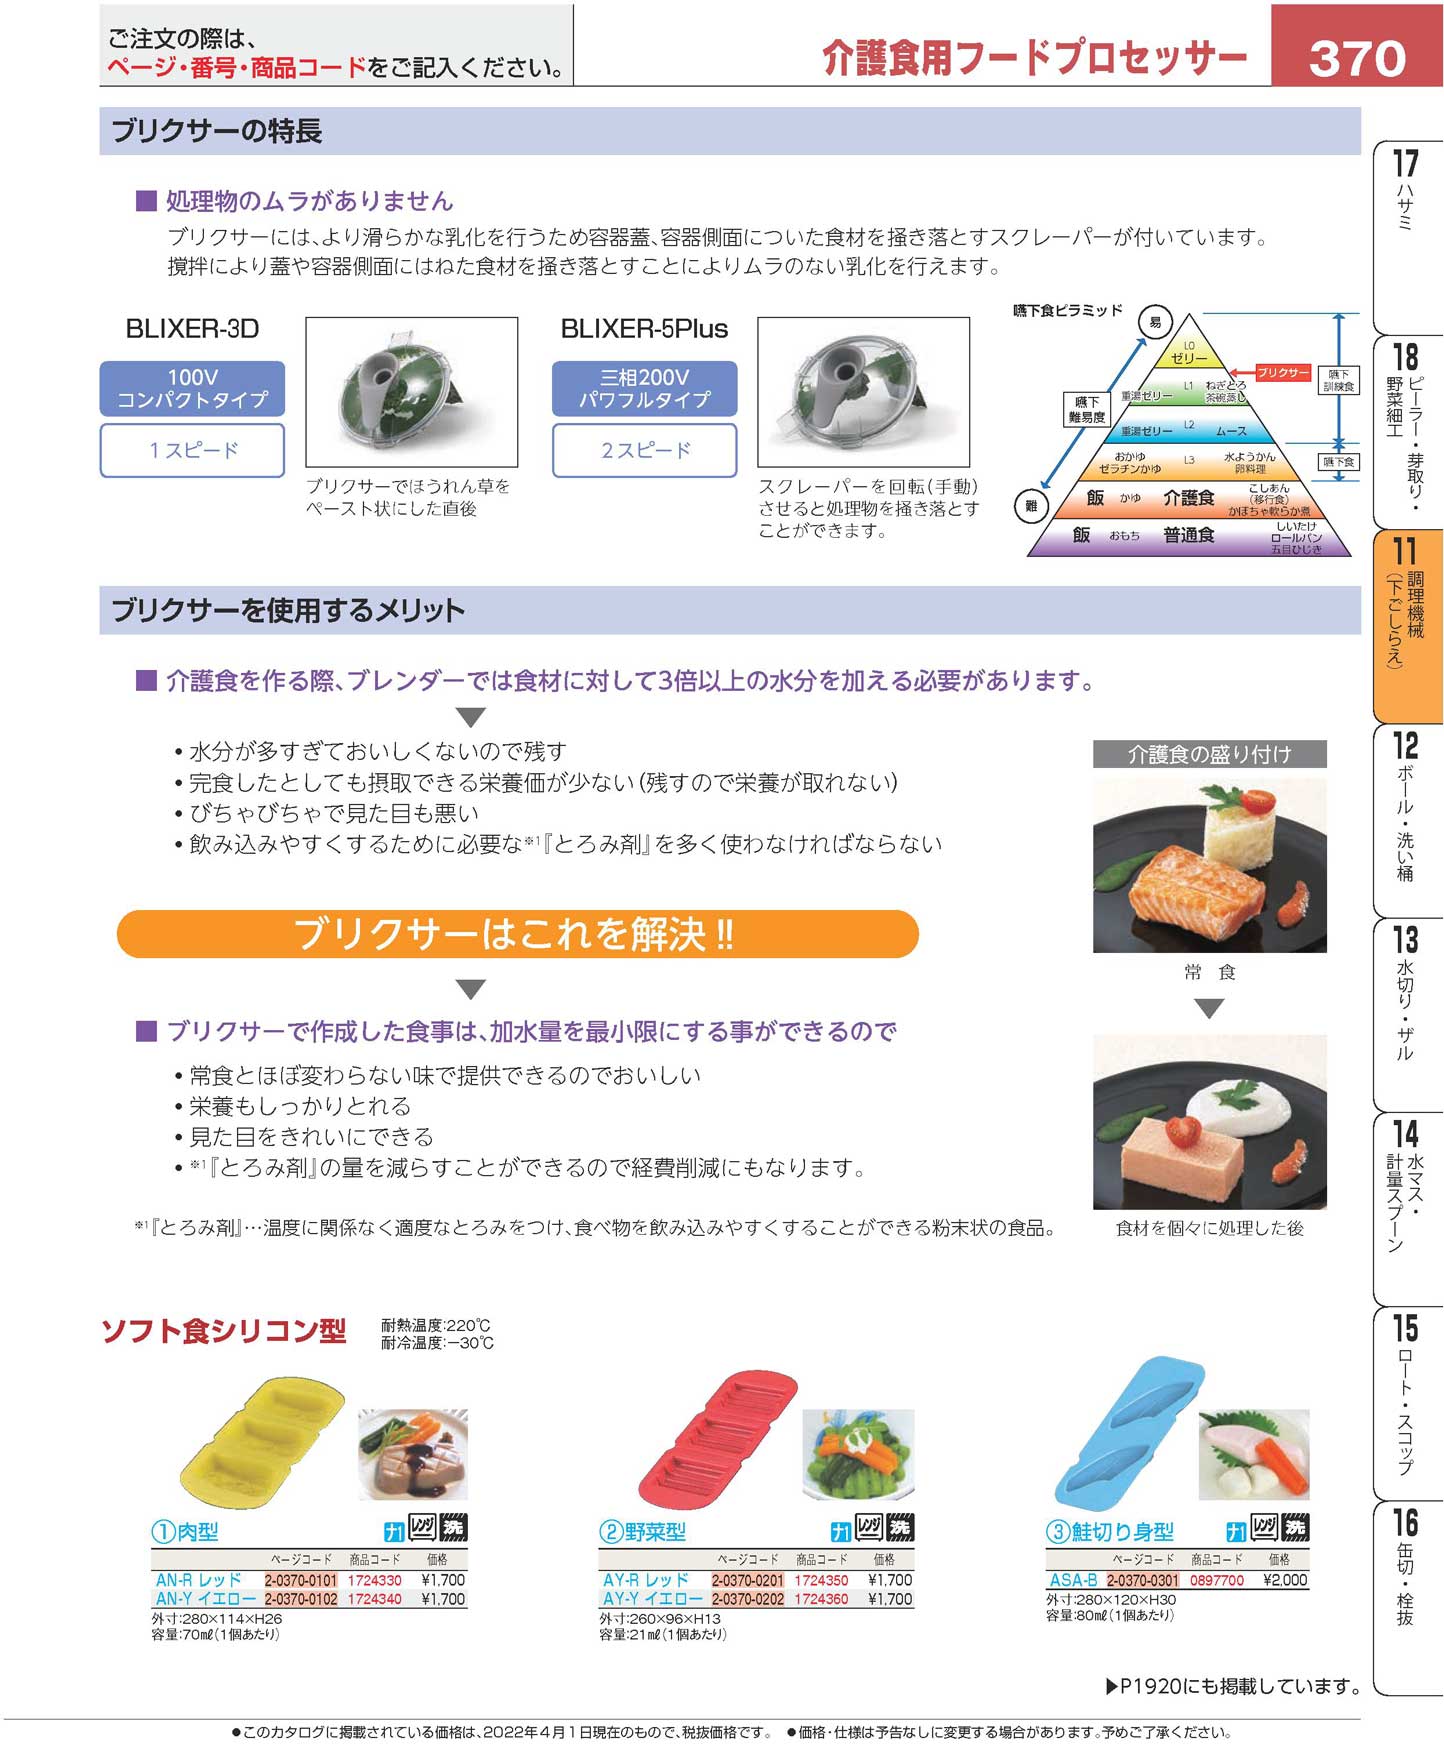 アサヒ ソフト食シリコン型 肉型 AN-R(レッド) 業務用 1724330